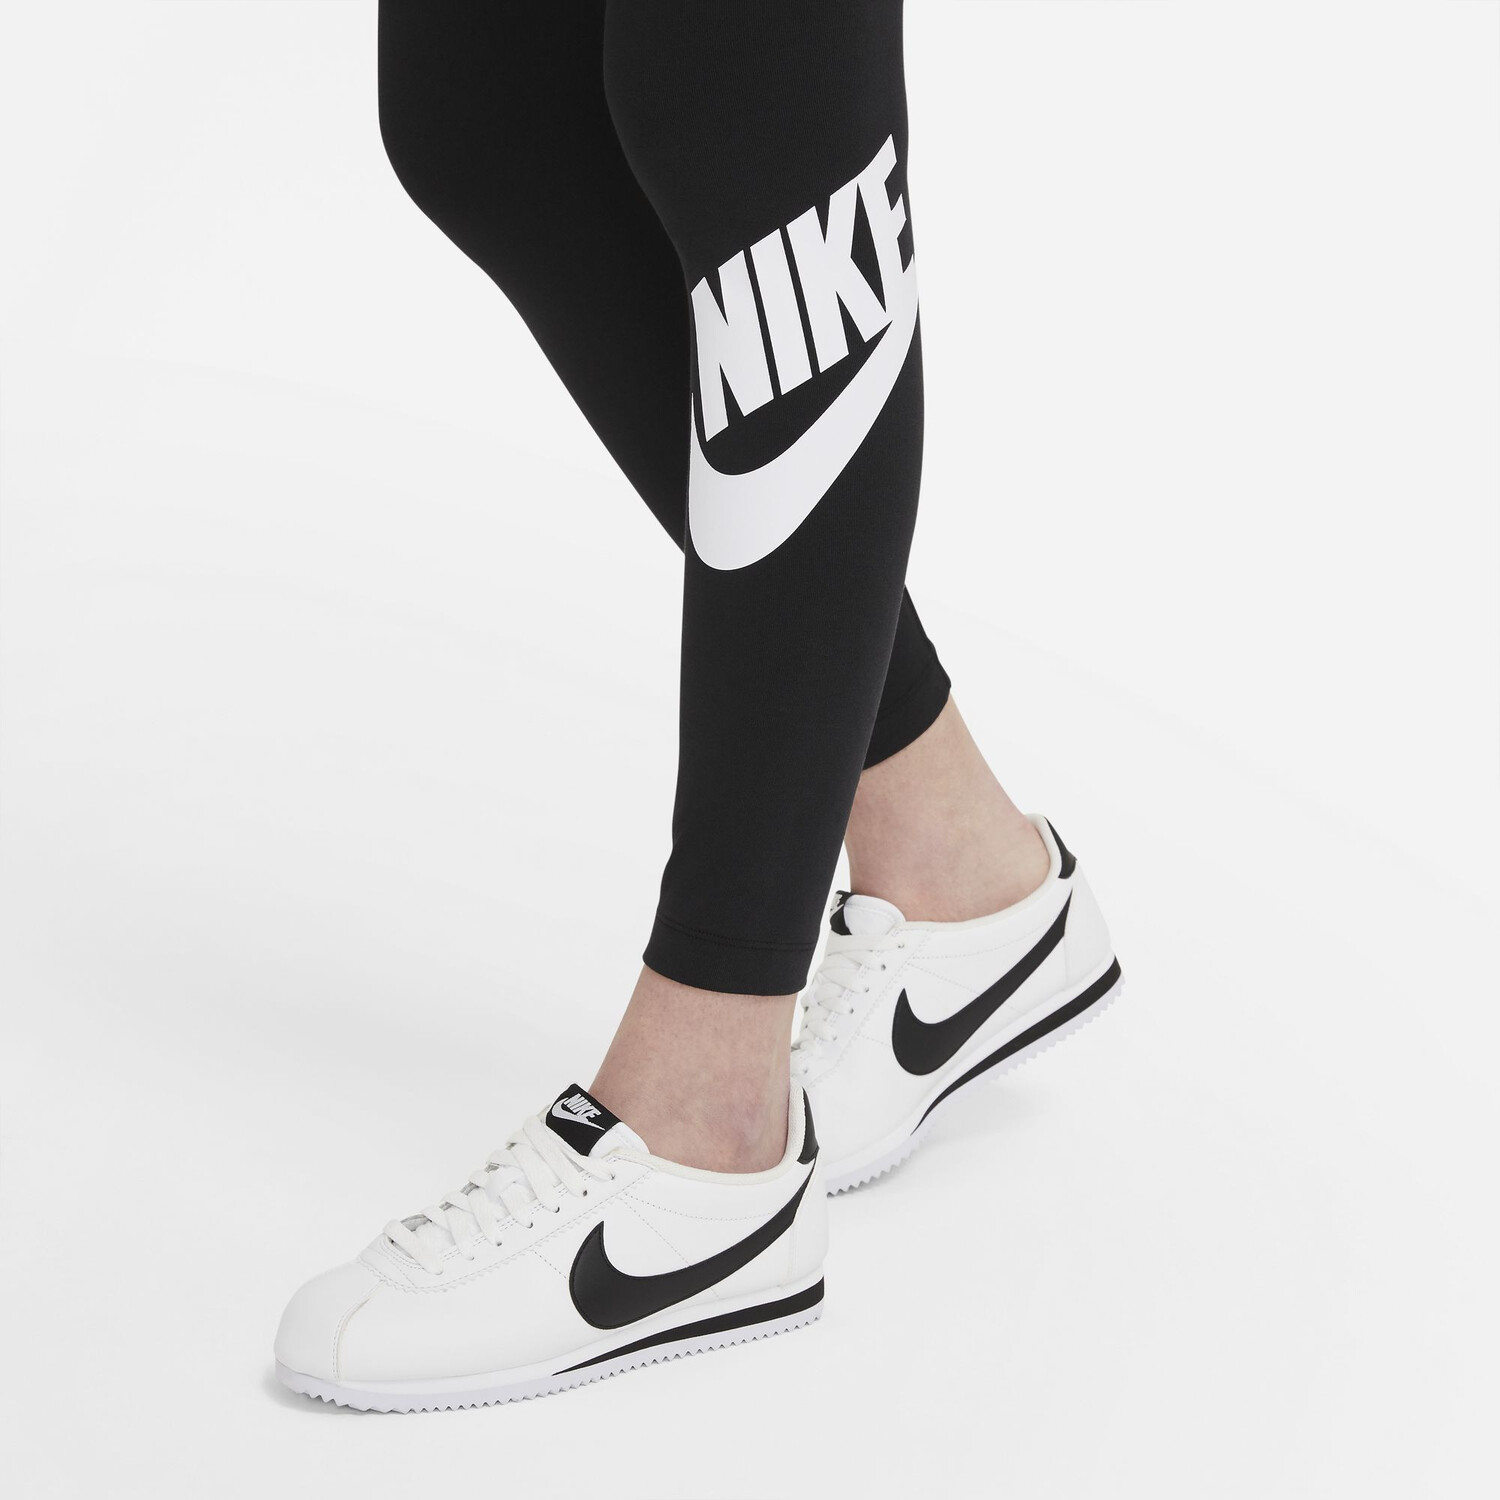 Nike Leggings pour femme gris/noir